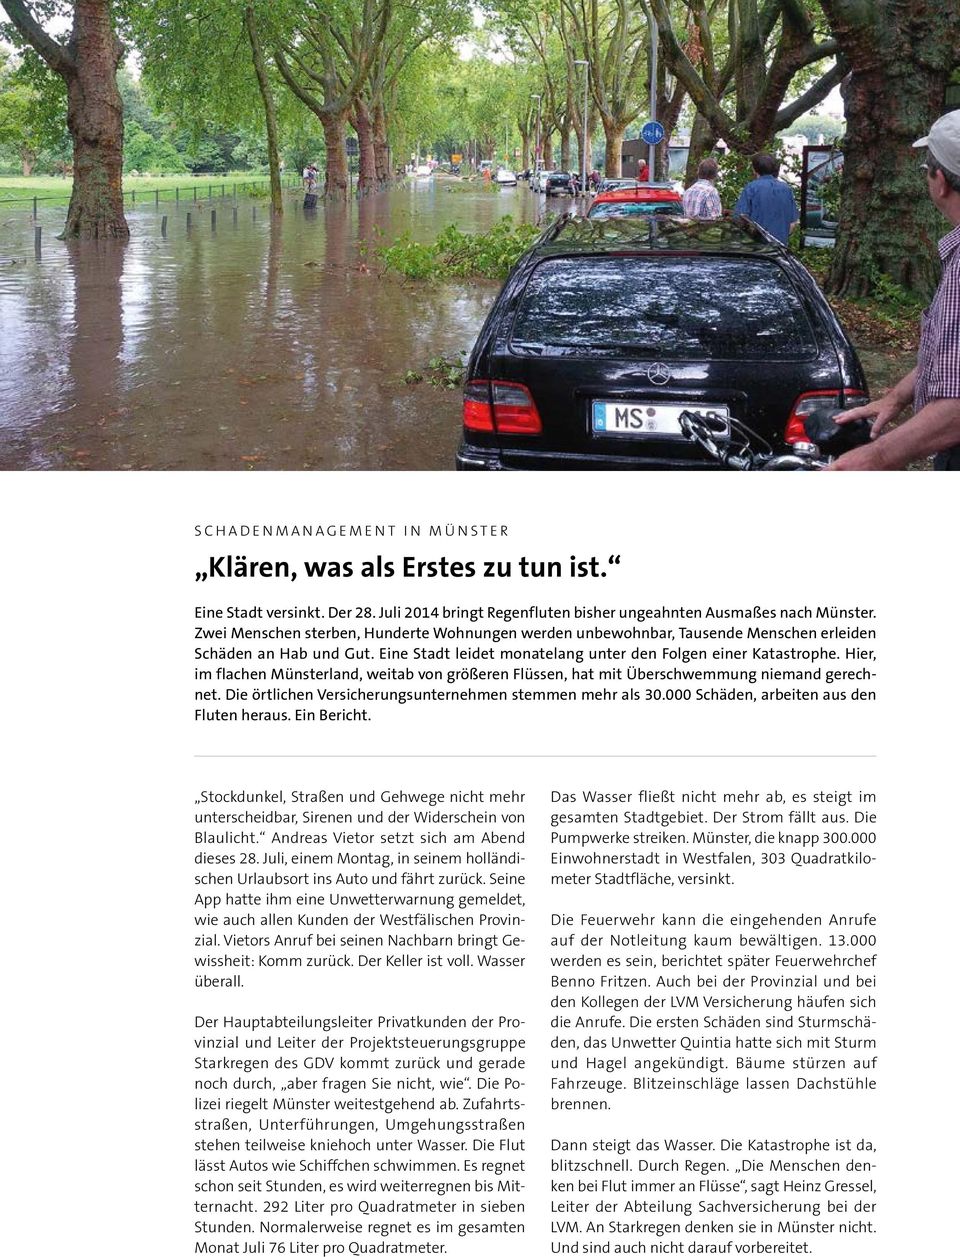 Hier, im flachen Münsterland, weitab von größeren Flüssen, hat mit Überschwemmung niemand gerechnet. Die örtlichen Versicherungsunternehmen stemmen mehr als 30.